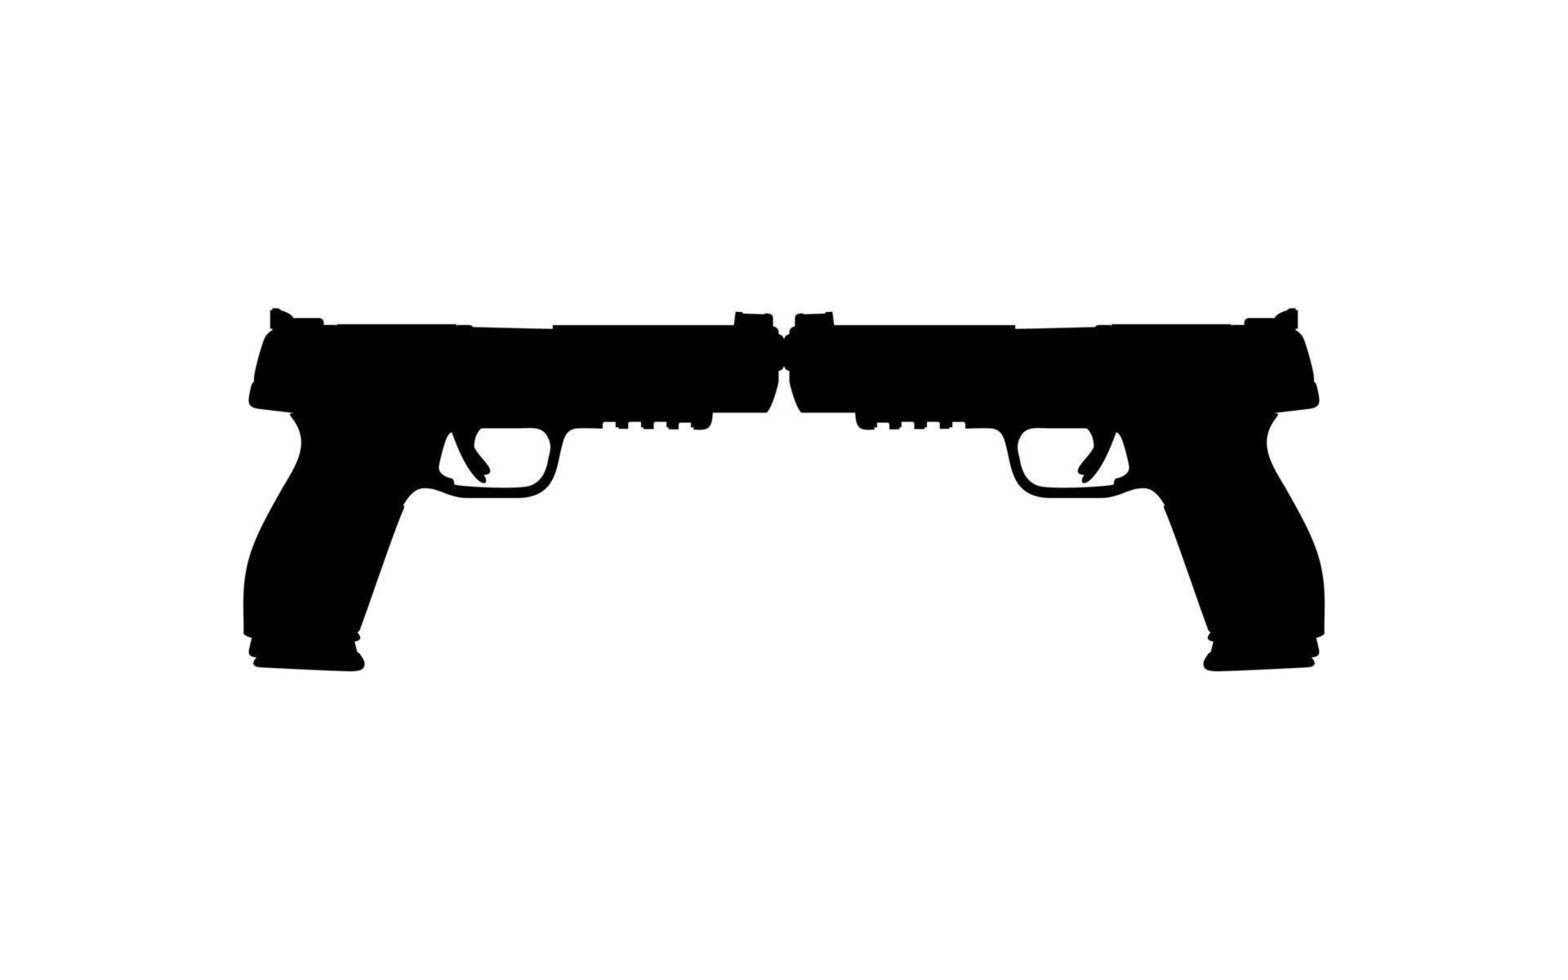 silhouette di pistola pistola per logo, pittogramma, arte illustrazione, sito web o grafico design elemento. vettore illustrazione